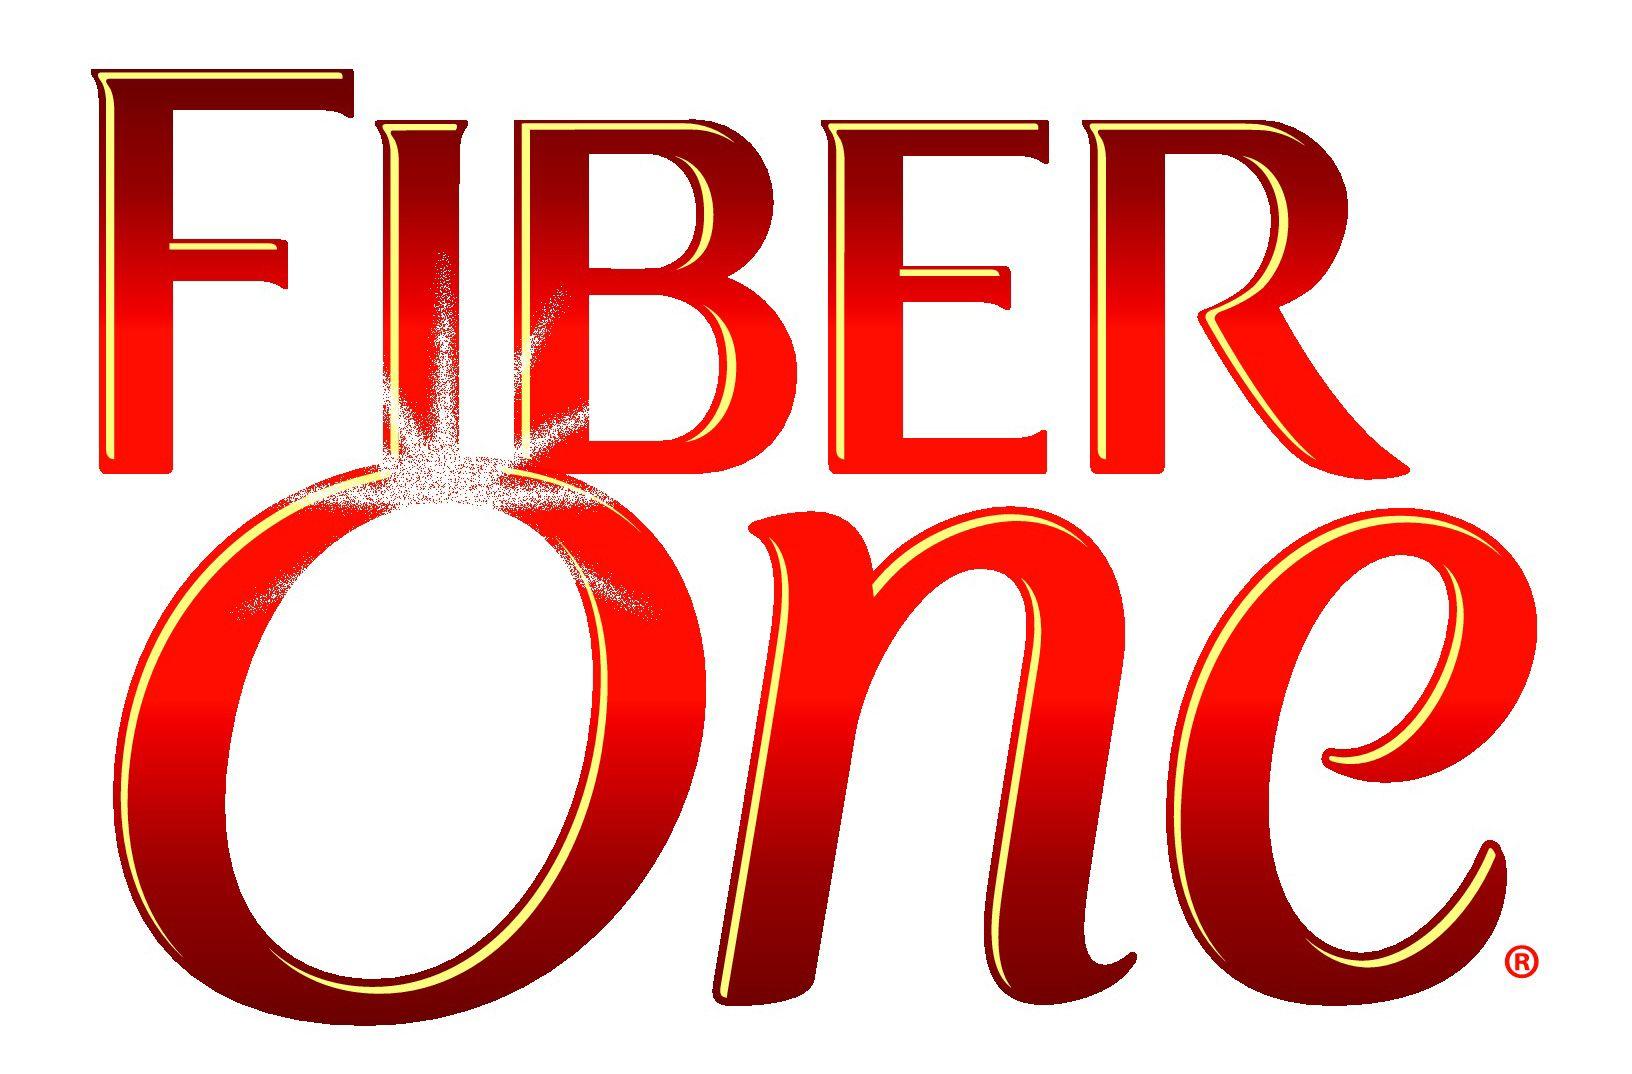 Fiber One Logo - Fiber One